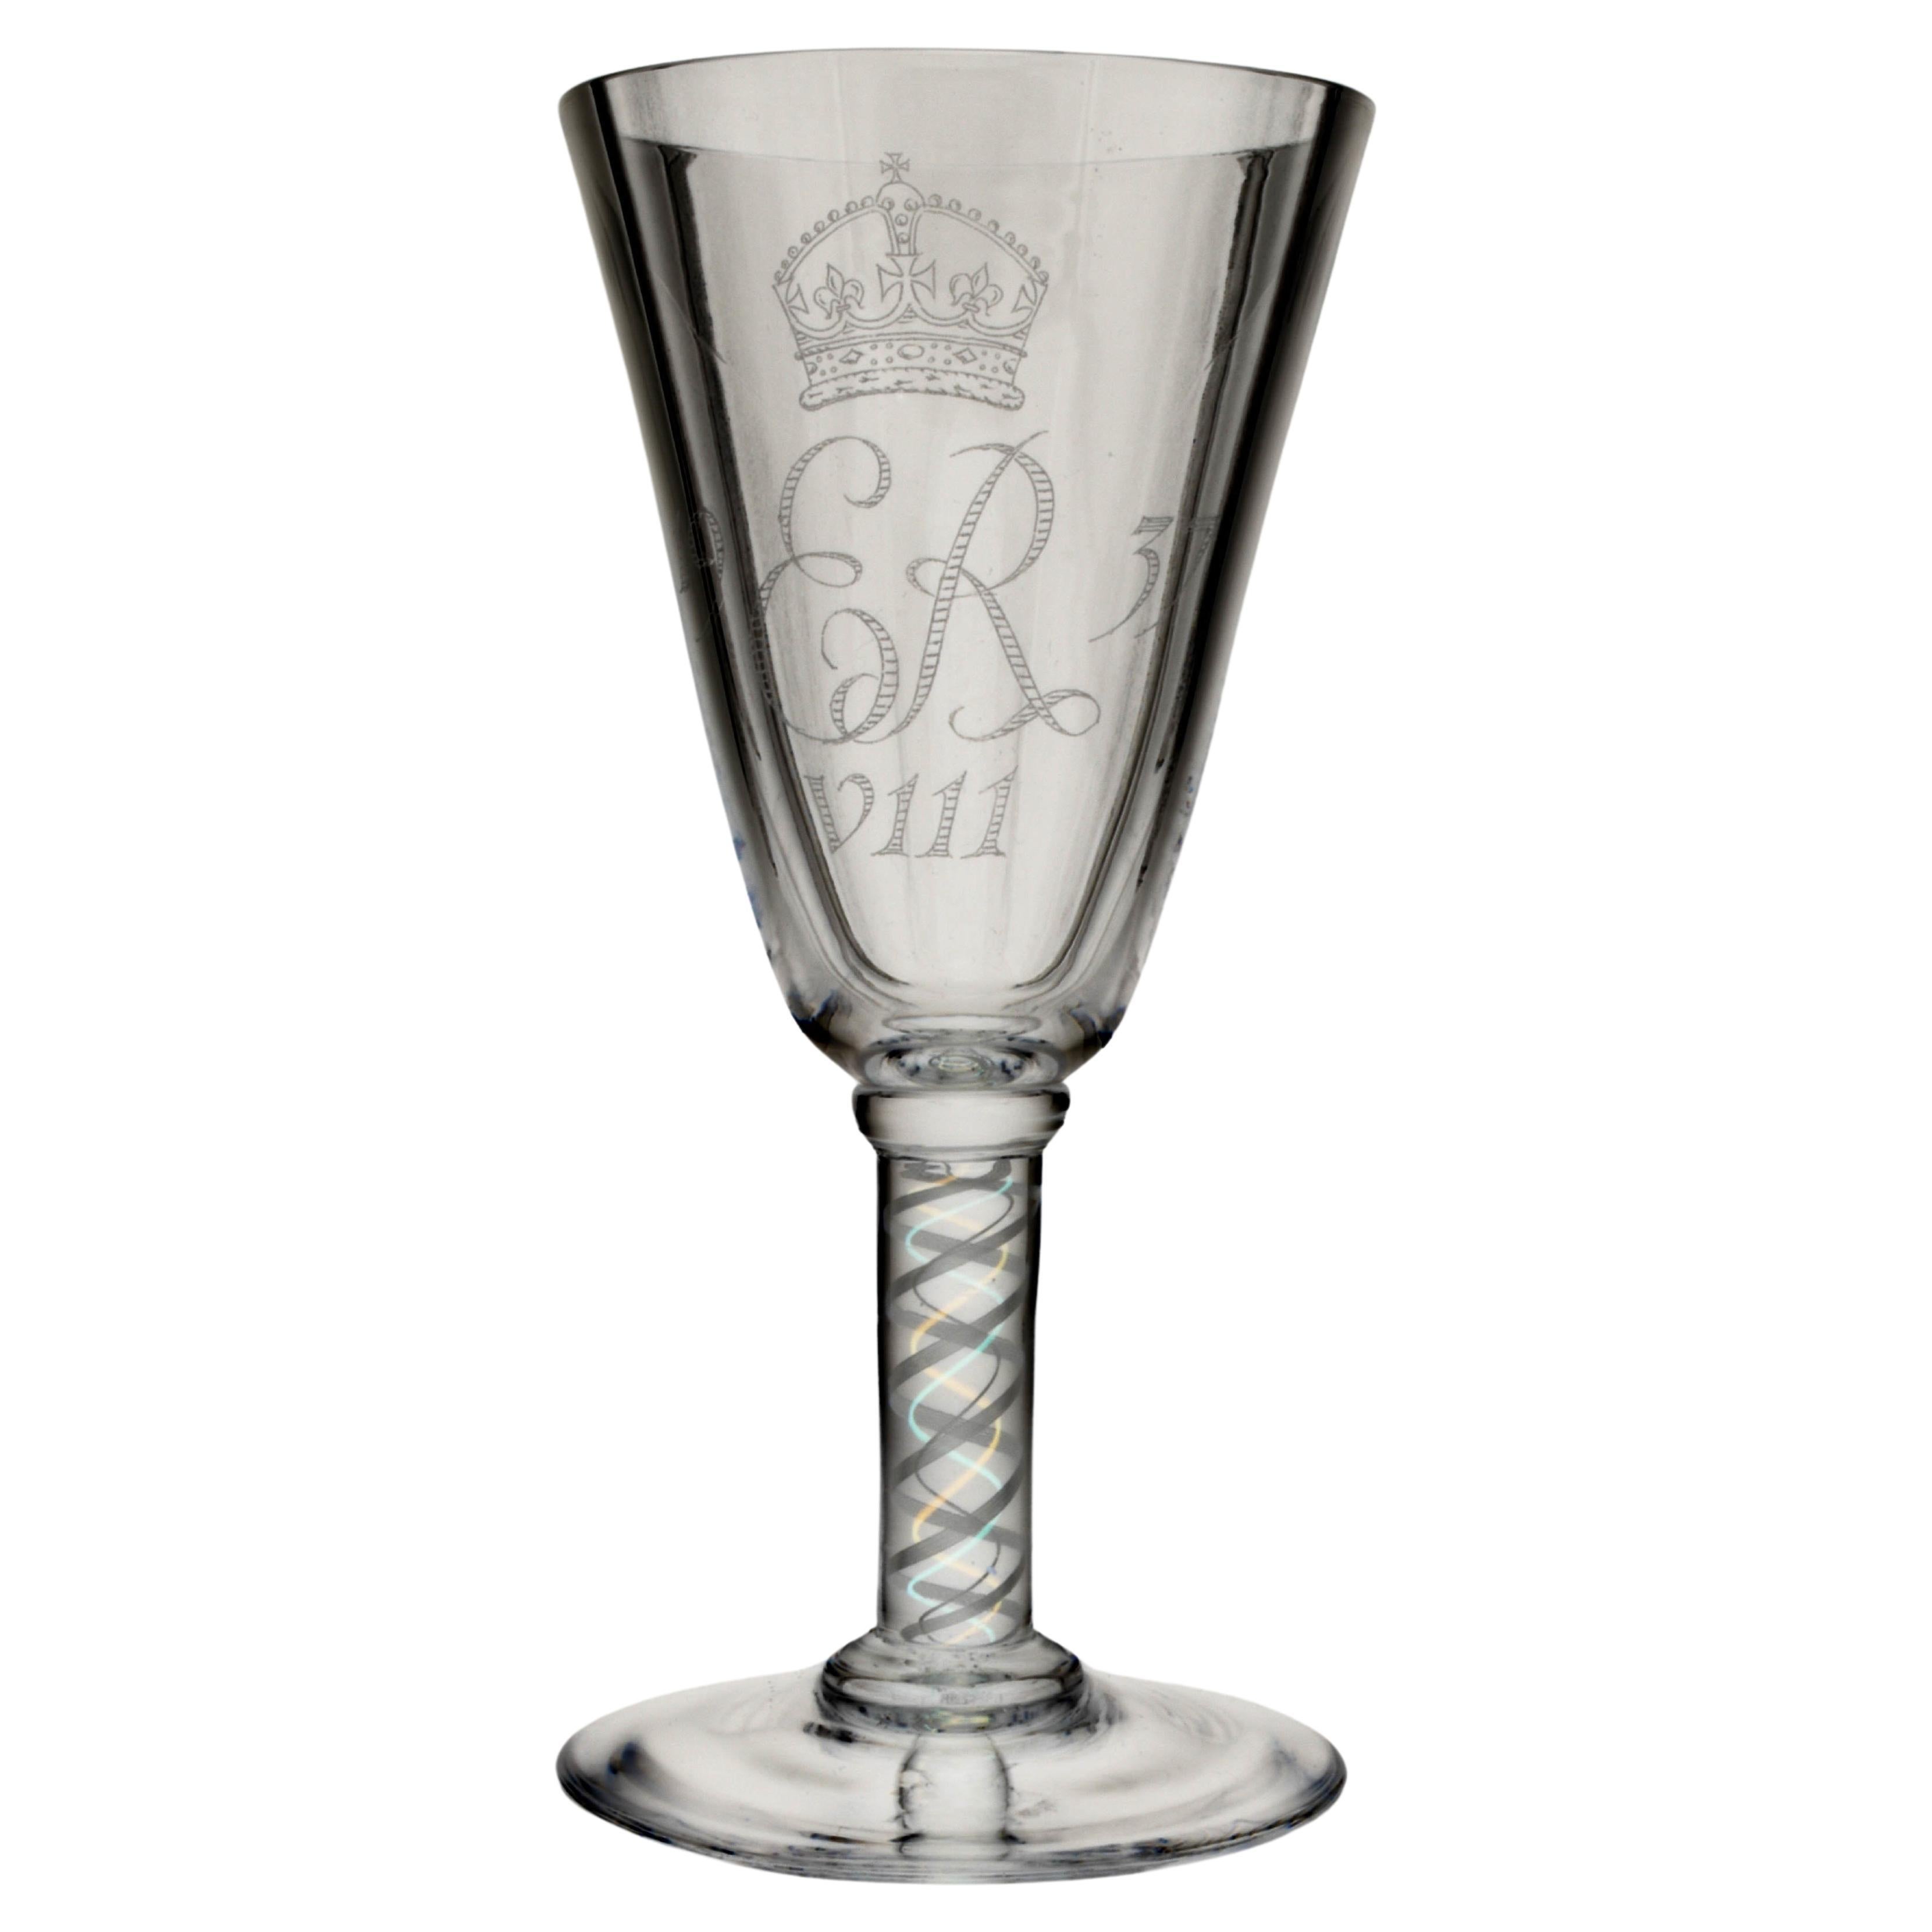 Verre à vin surdimensionné avec Stem en forme d'aiguille, pour le couronnement d'Édouard VIII en 1937.